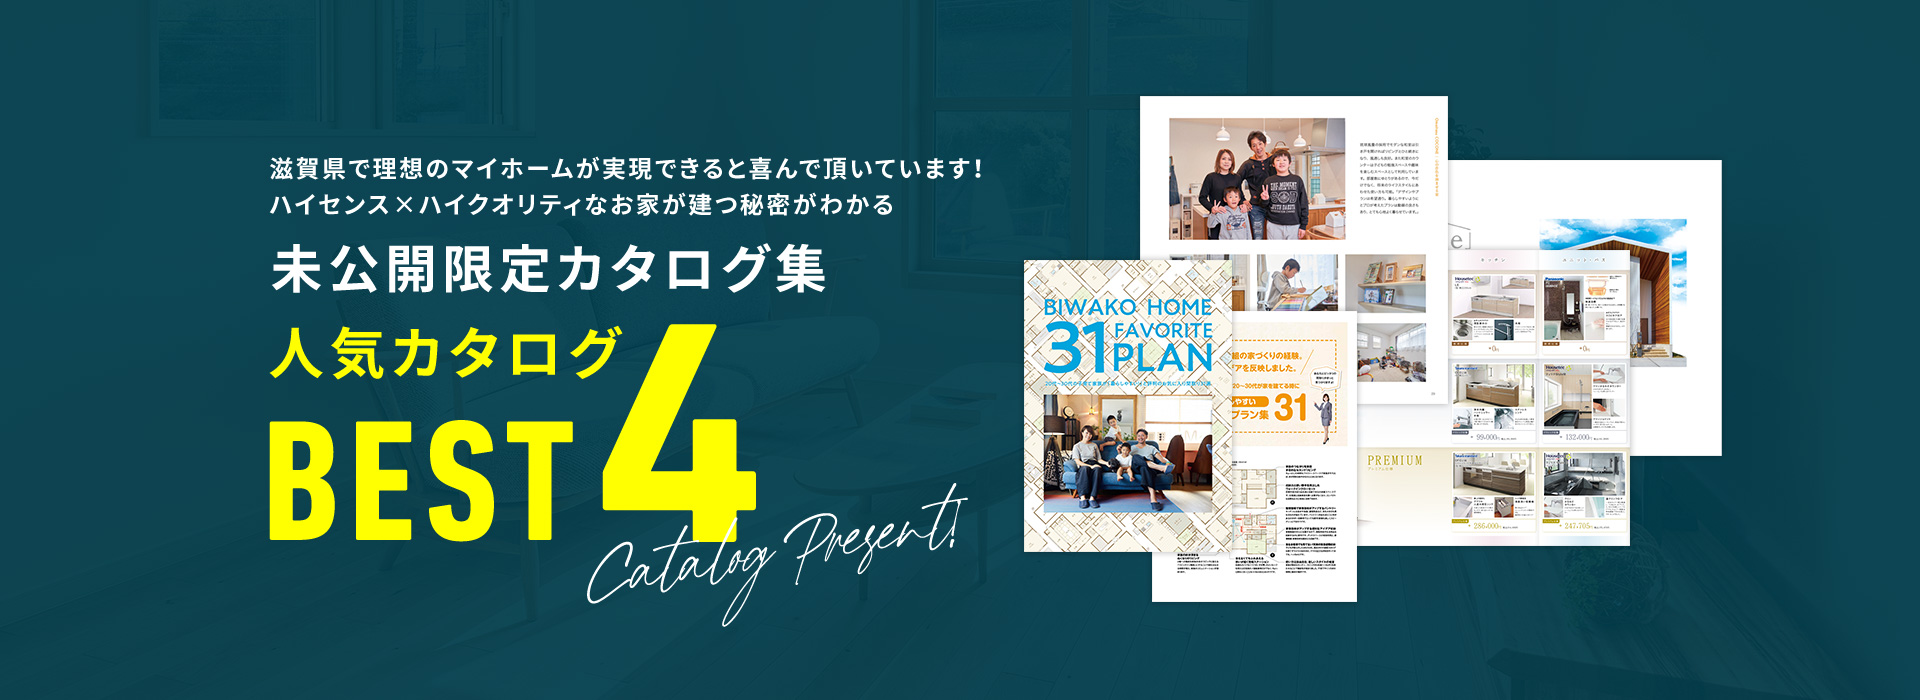 滋賀県で理想のマイホームが実現できると喜んで頂いています！ハイセンス×ハイクオリティなお家が建つ秘密がわかる 未公開限定カタログ集人気カタログBEST4